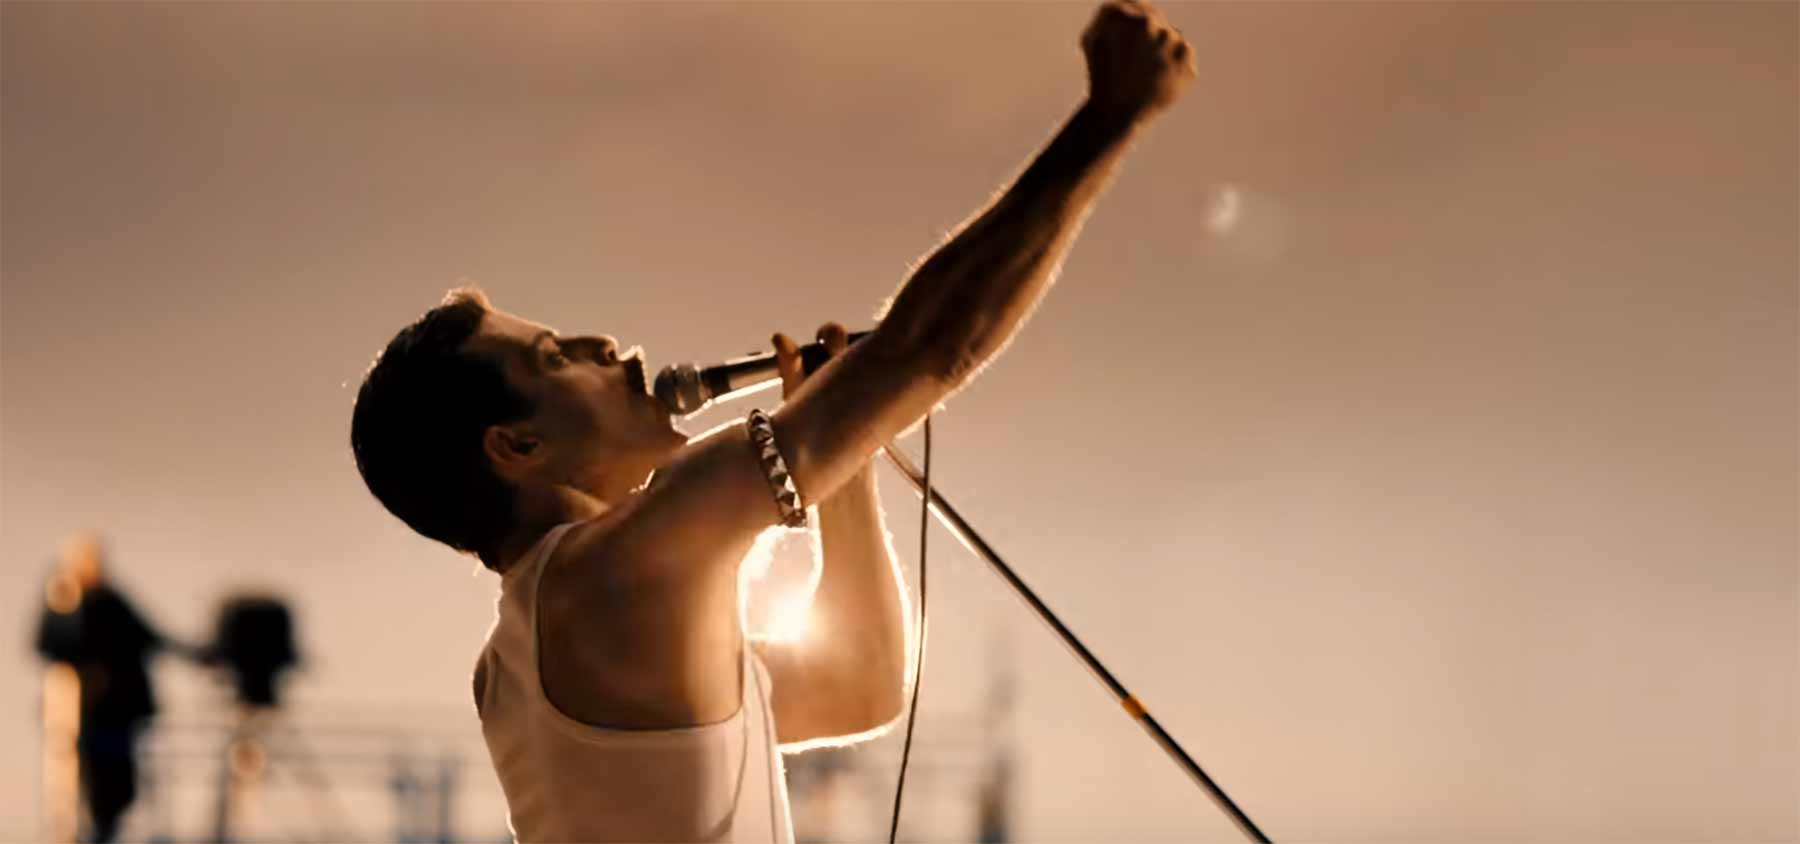 Erster Trailer zum Queen-Film "Bohemian Rhapsody" queen-film-bohemian-rhapsody 